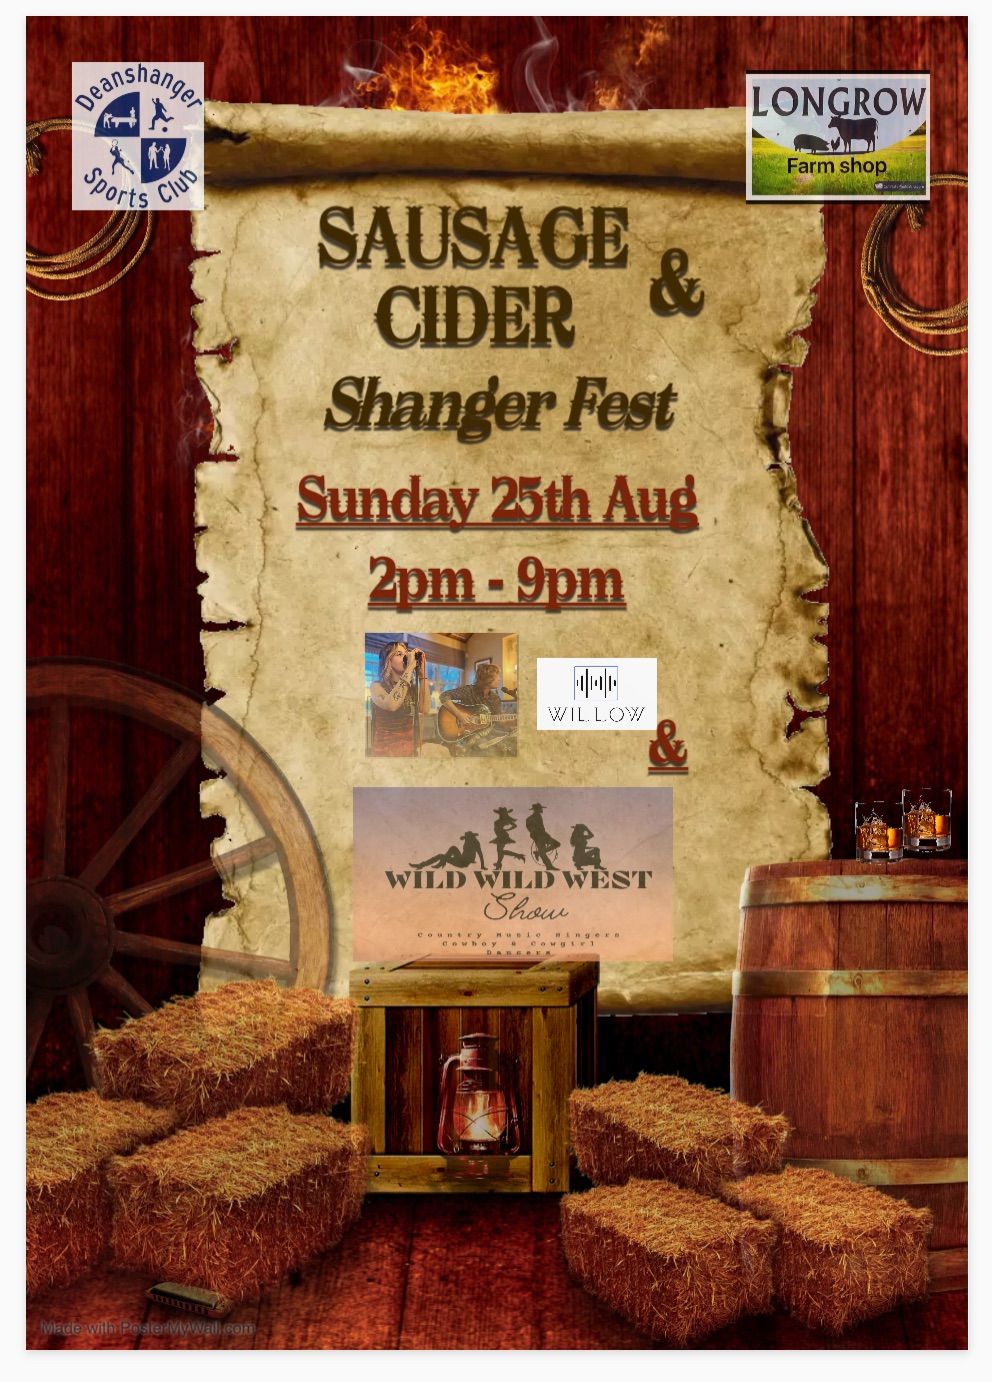 Sausage & Cider Shanger Fest